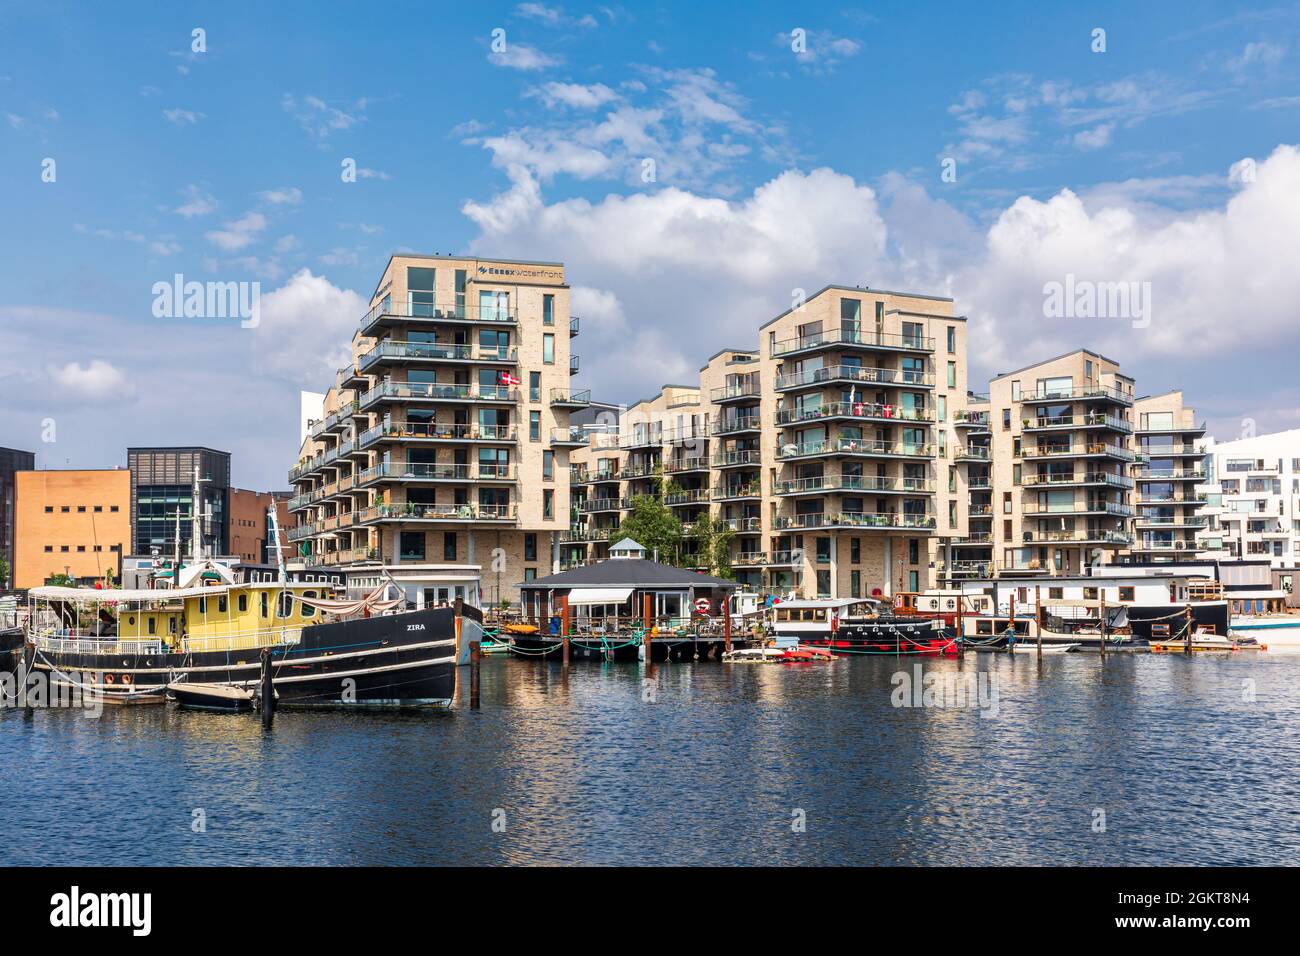 Apartamentos modernos recientemente desarrollados, Havneholmen, Copenhague, Dinamarca Foto de stock